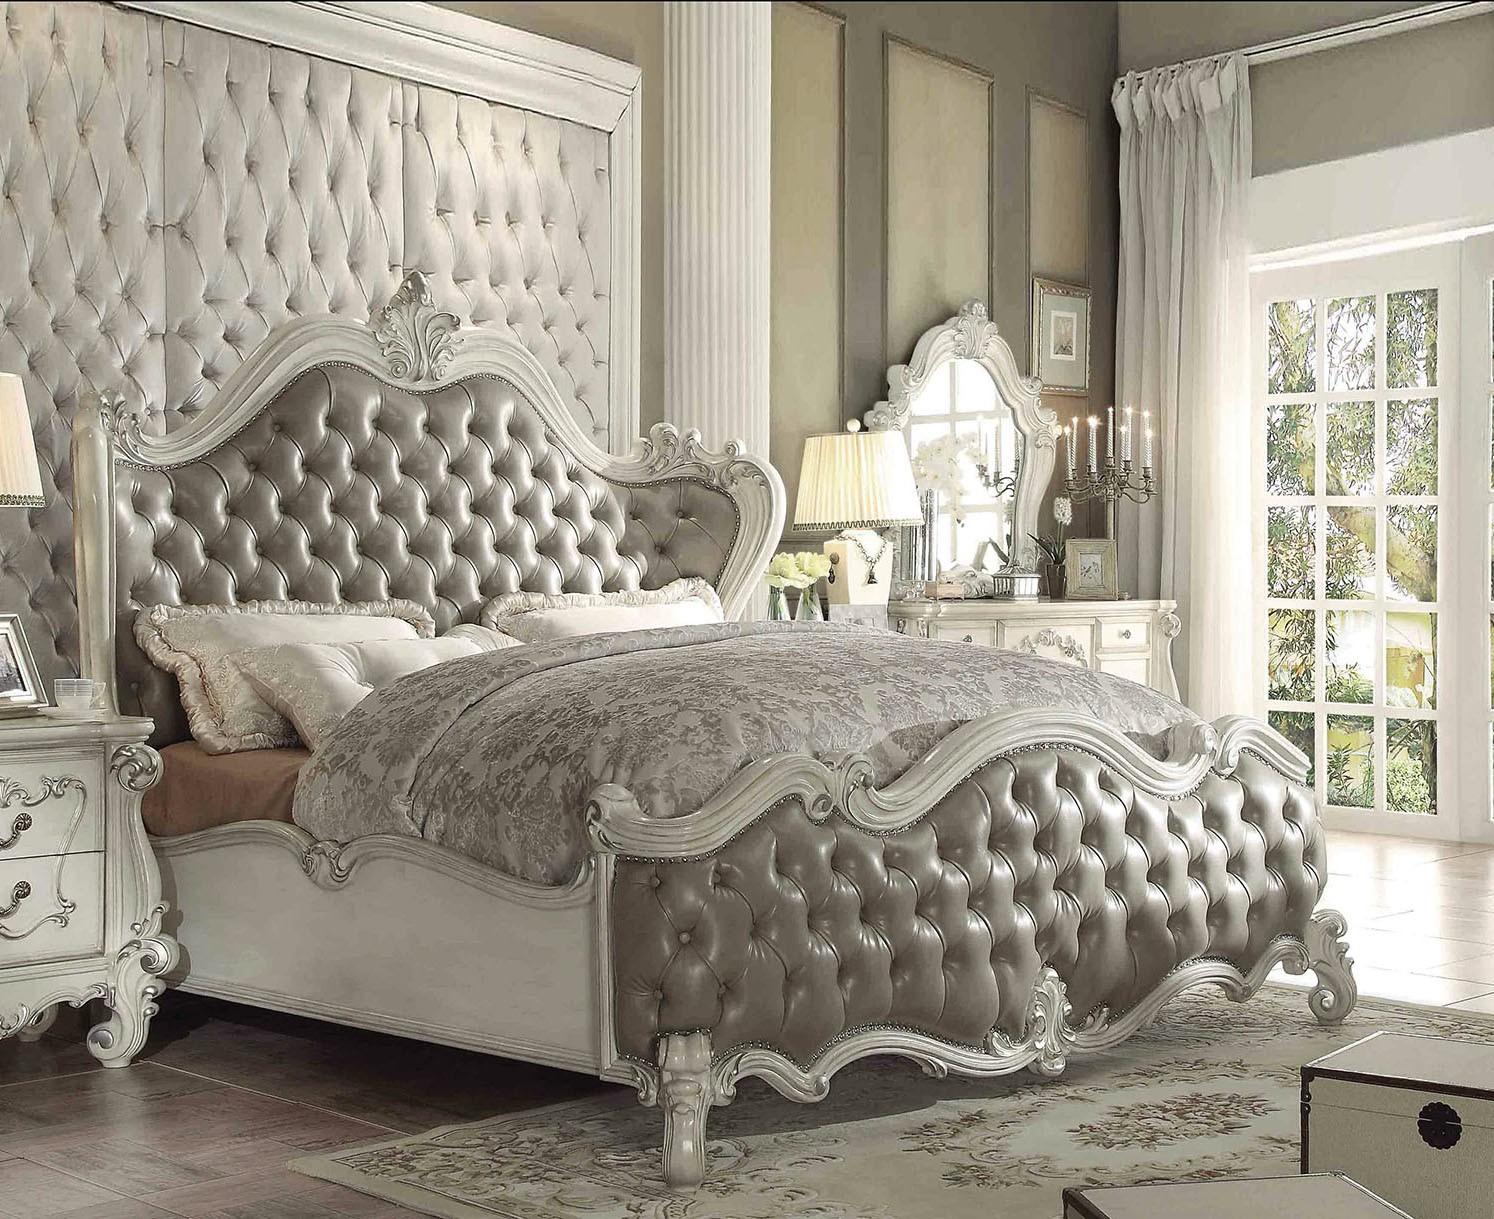 

    
Superstar Upholstered Standard Bed King
